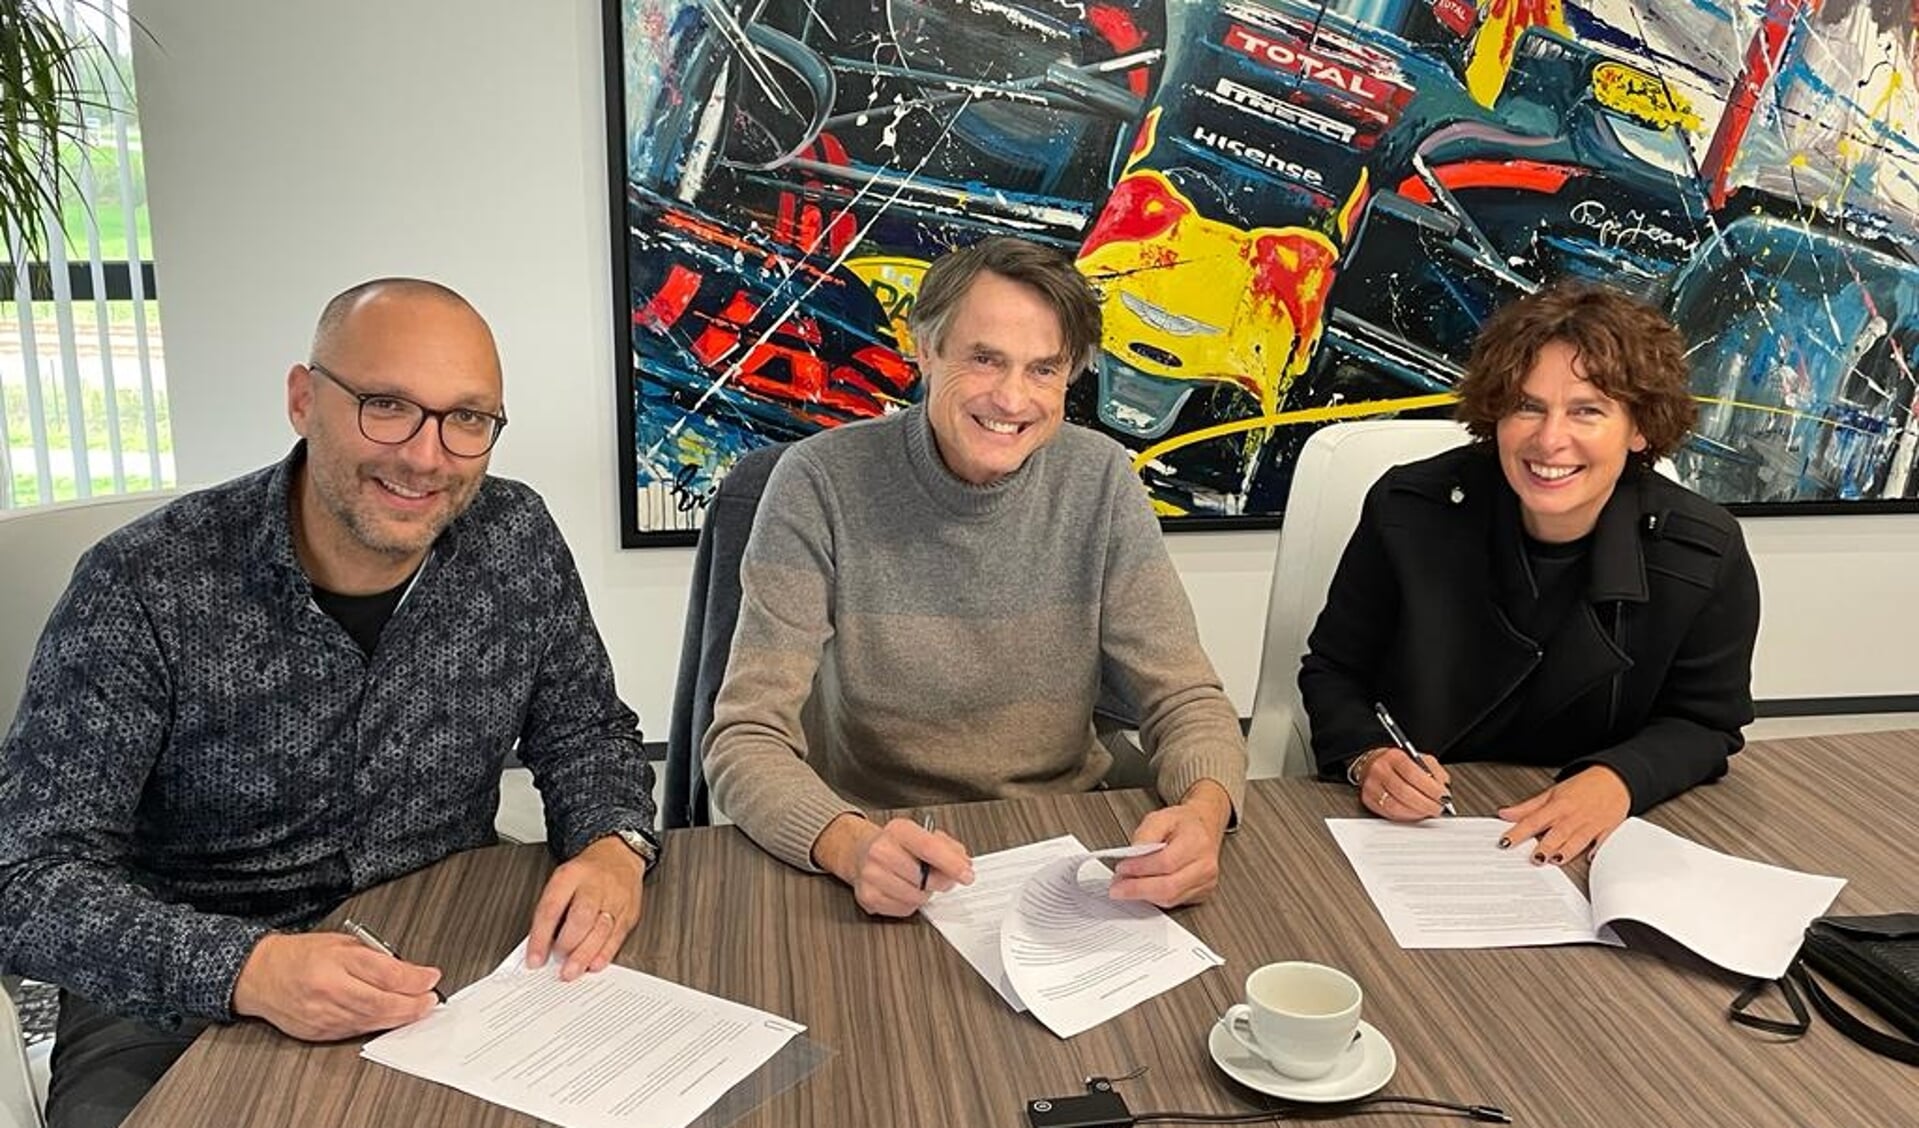 De overdrachtsakte is inmiddels getekend. Vlnr: Daniël Frenken, Paul Kuipers en Daniëlle Kuipers-Huis in 't Veld. Foto: PR